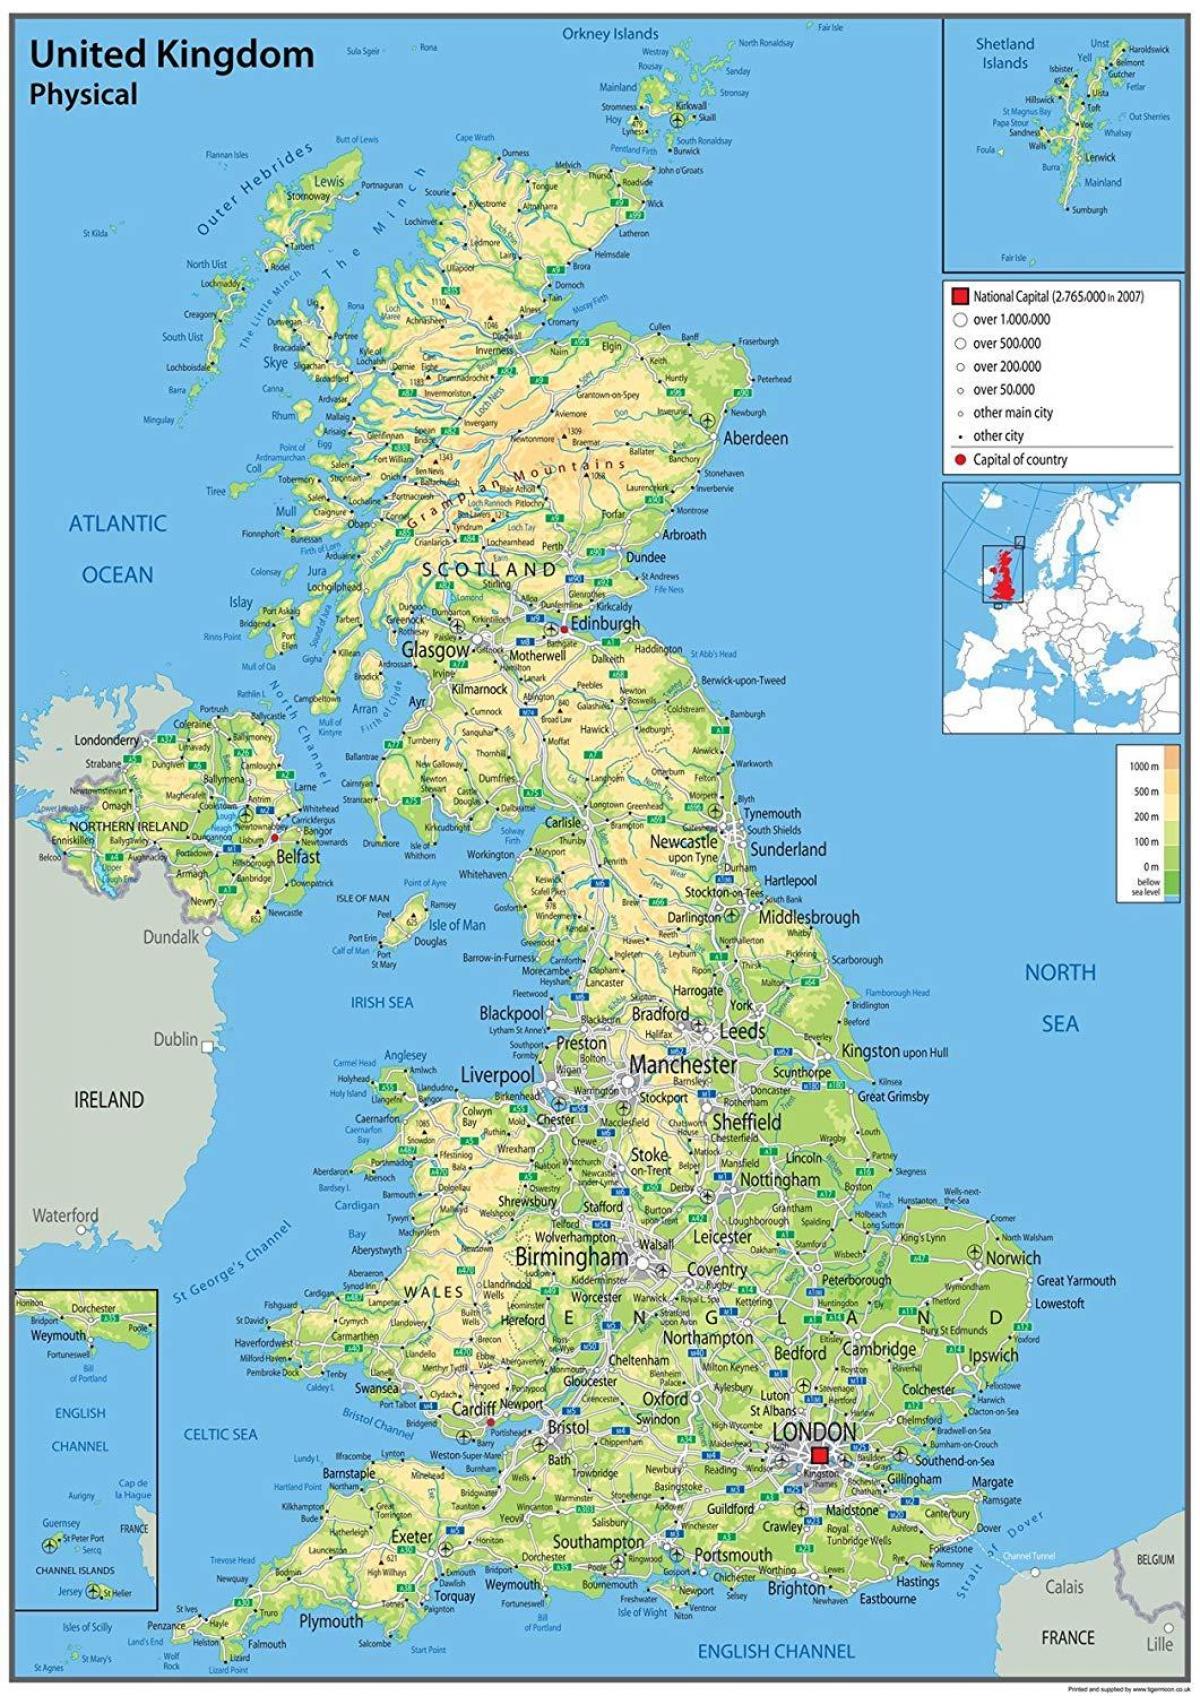 خريطة الشكل البري للمملكة المتحدة (المملكة المتحدة)